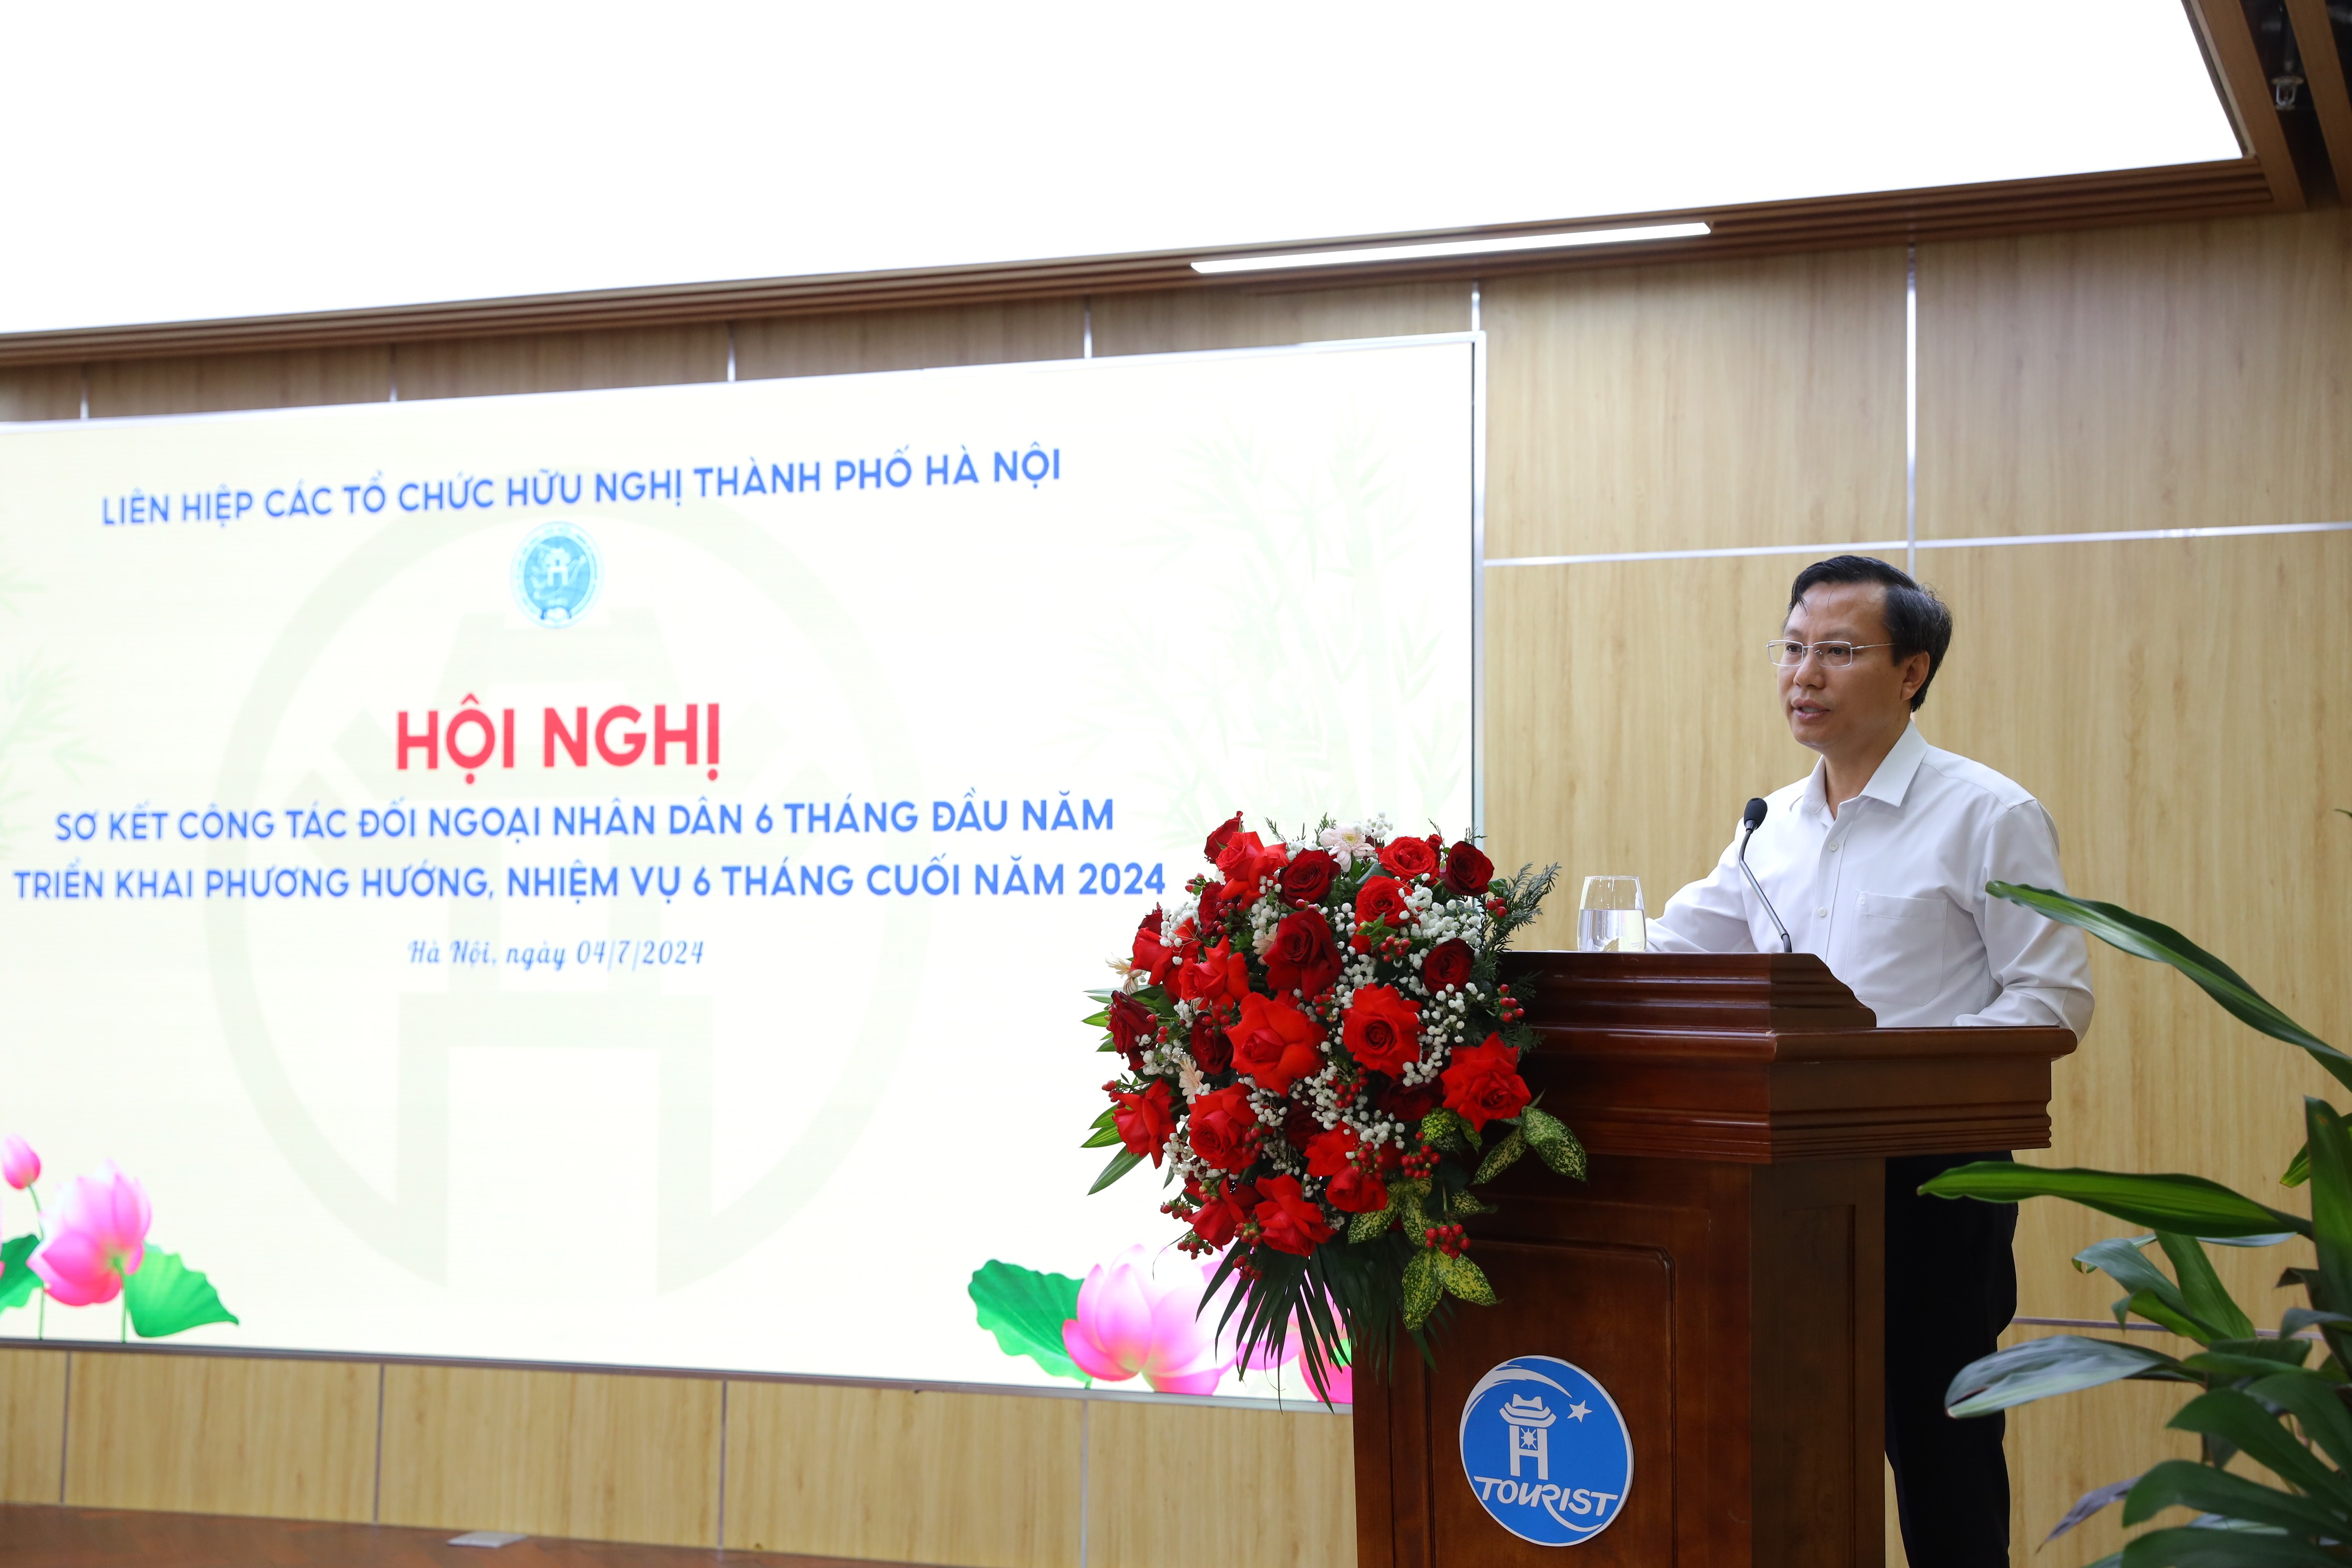 ông Nguyễn Văn Hanh, đại diện lãnh đạo Hội hữu nghị Việt - Nga thành phố Hà Nội 